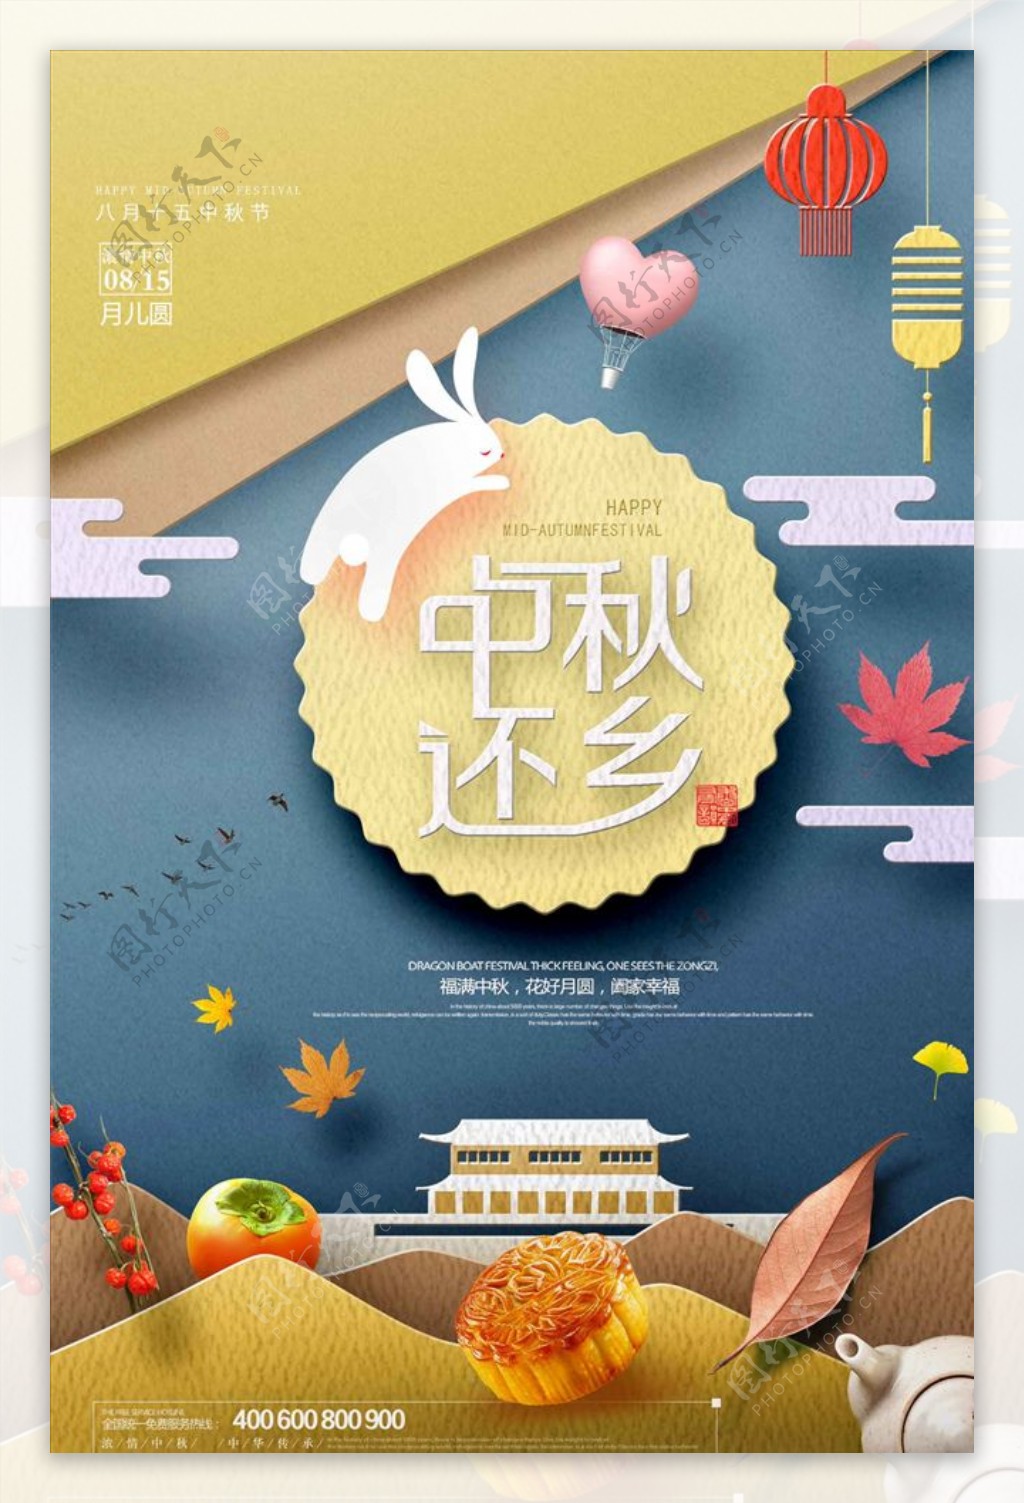 创意剪纸中秋节宣传海报